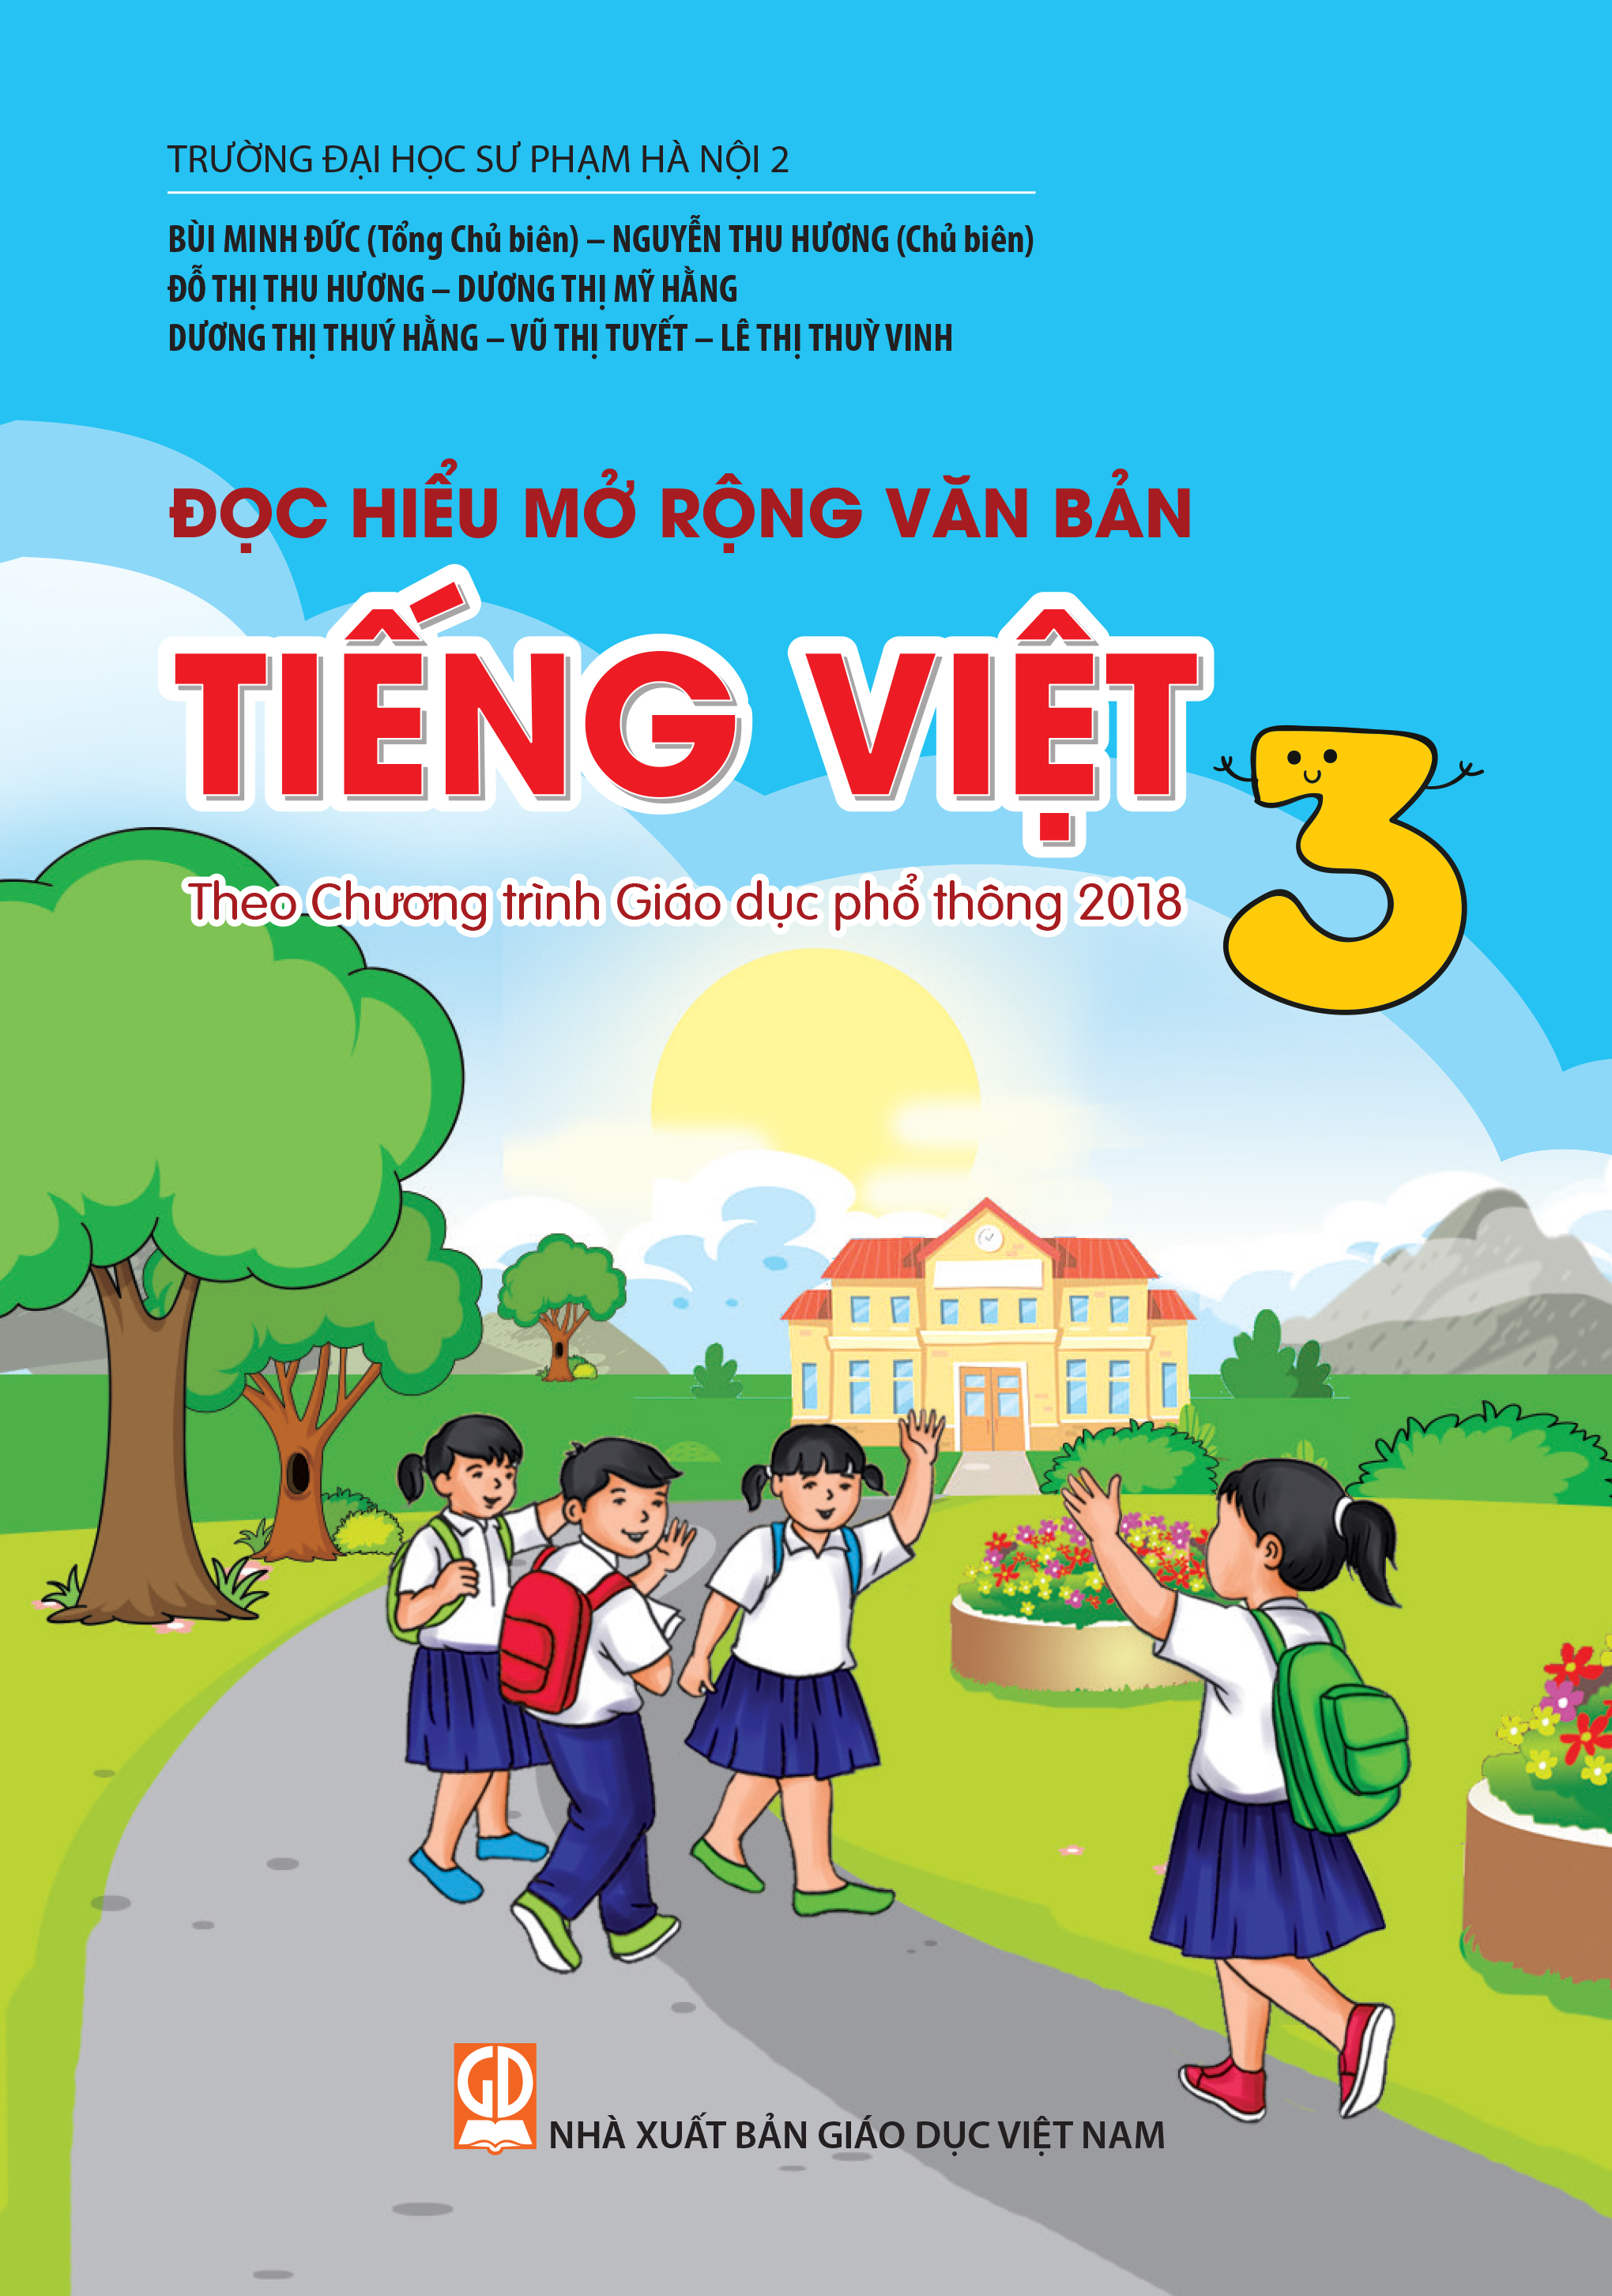 Đọc hiểu mở rộng văn bản Tiếng Việt 3 Theo Chương trình Giáo dục phổ thông 2018